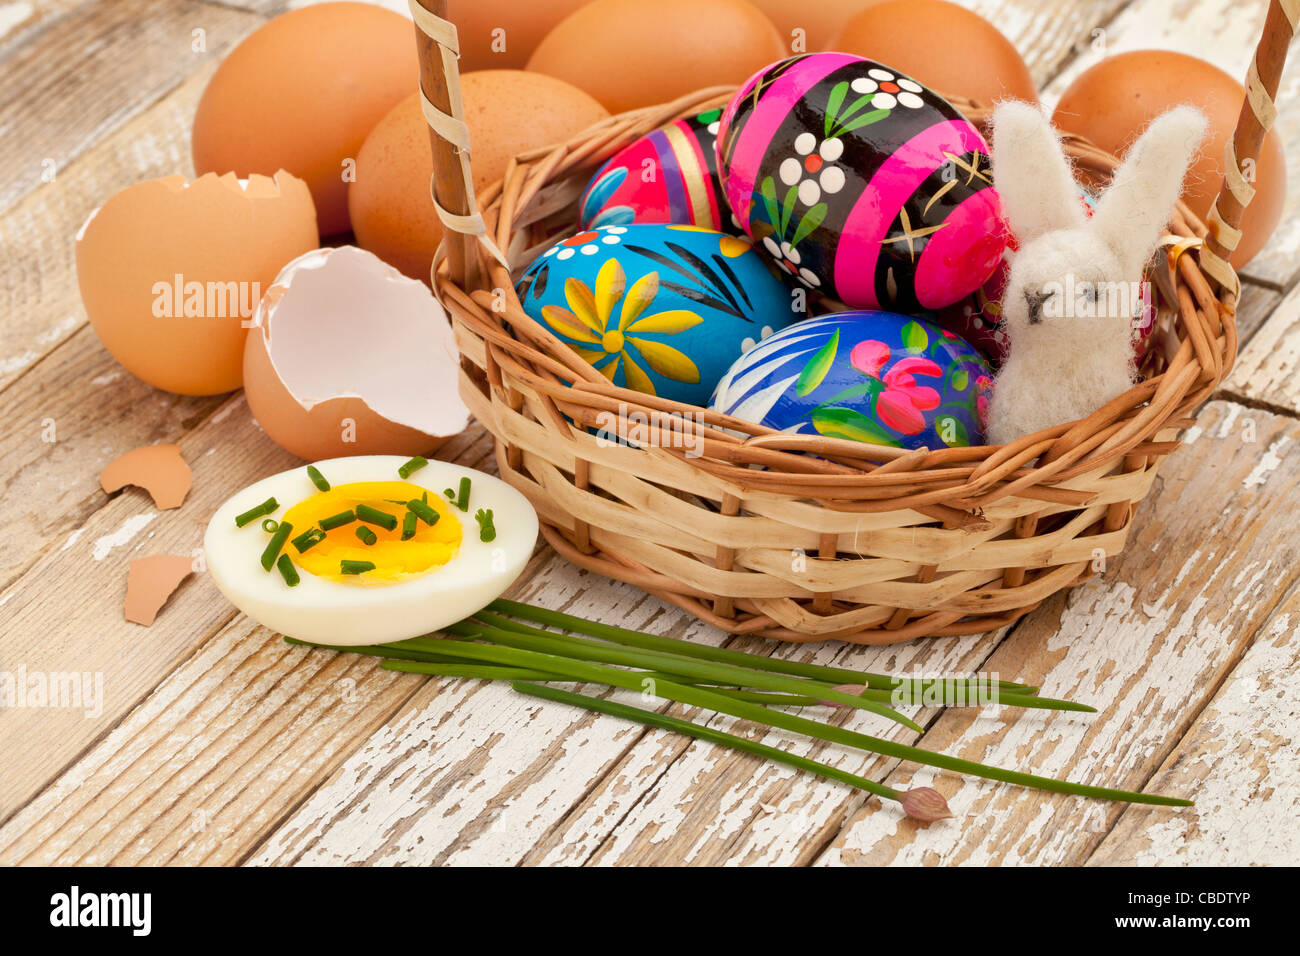 Pasqua concetto di decorazione - dipinti uova pasquali uova di gallina con verde erba cipollina e coniglietto di lana in un cestello Foto Stock